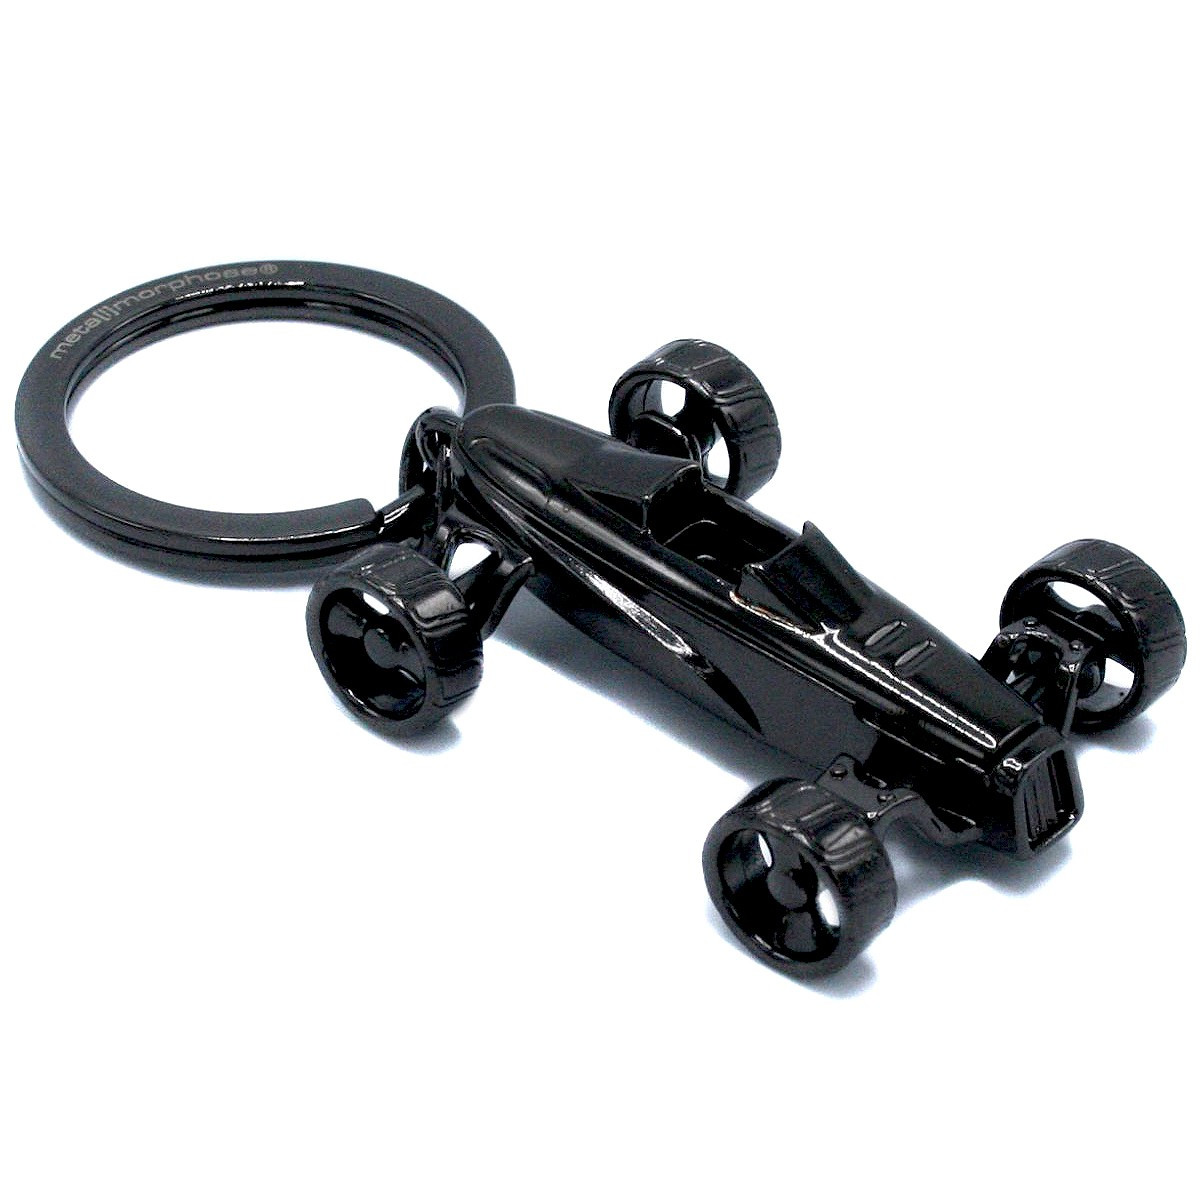 Porte-clefs gants de travail comme cadeaux d'affaires (121610001)